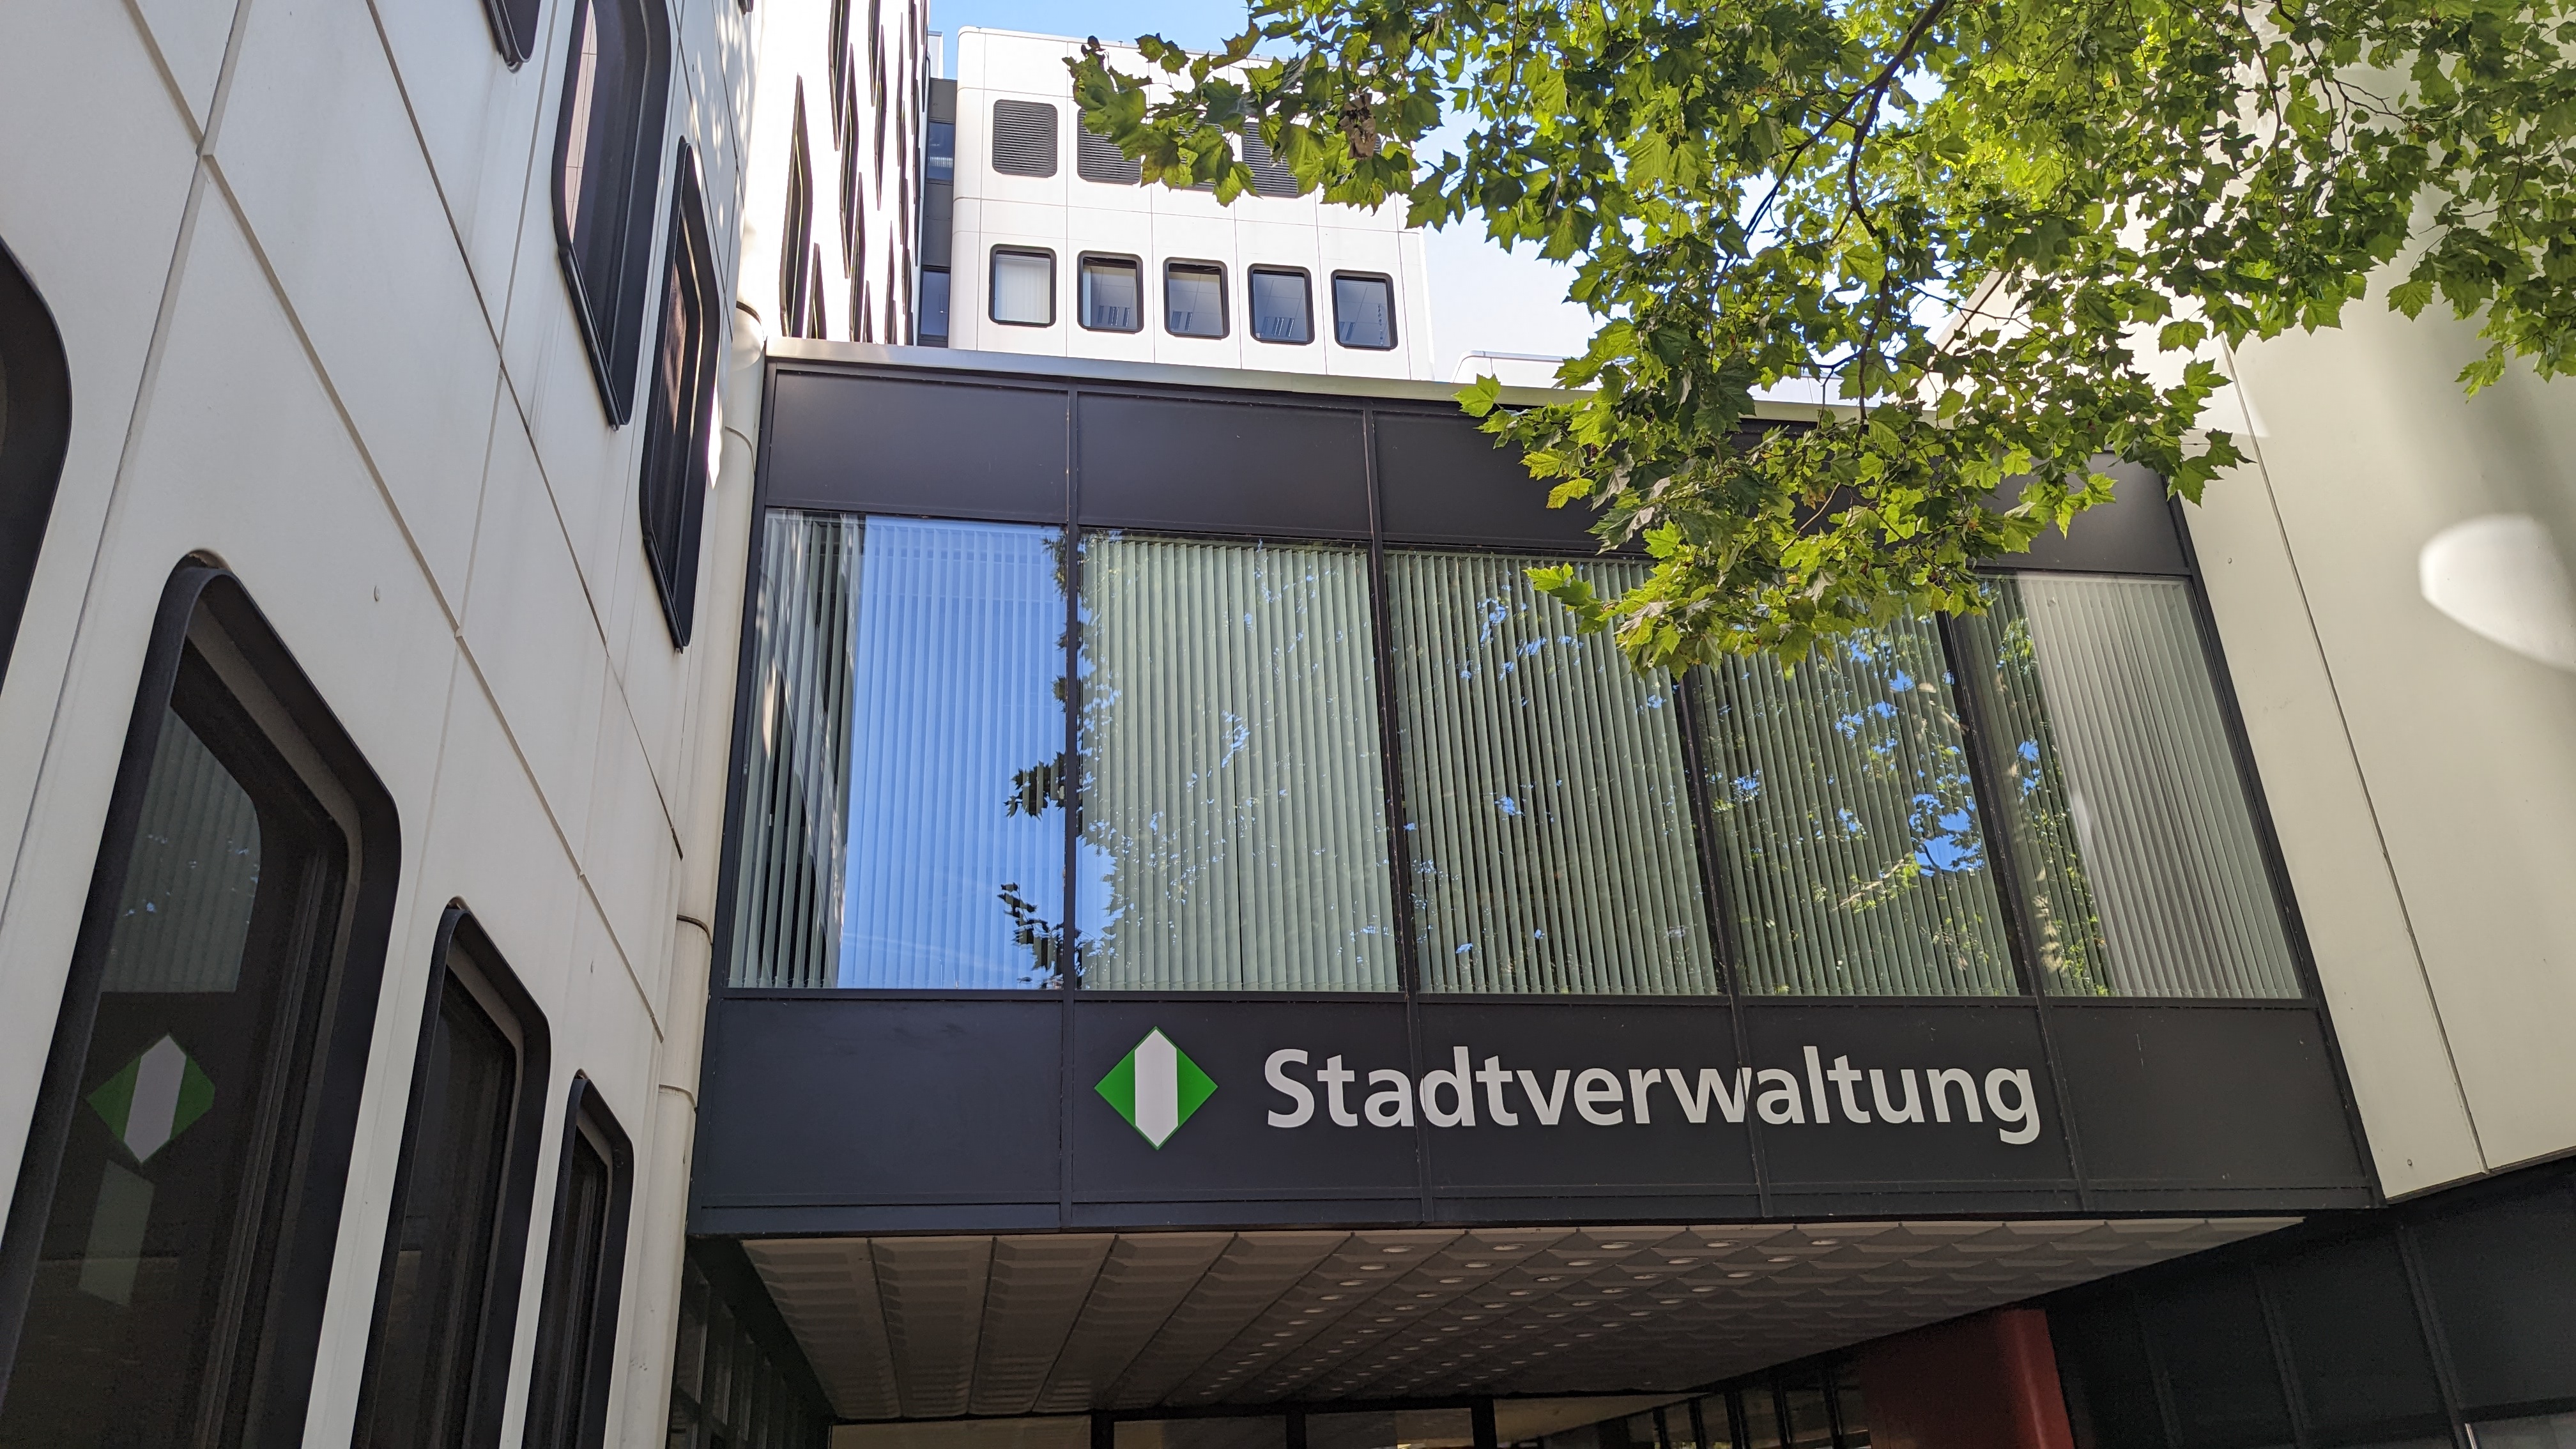 Eingang zum Verwaltungsgebäude Goetheplatz in Opladen. Über dem Haupteingang steht das Logo der Stadt und der Schriftzug "Stadtverwaltung".